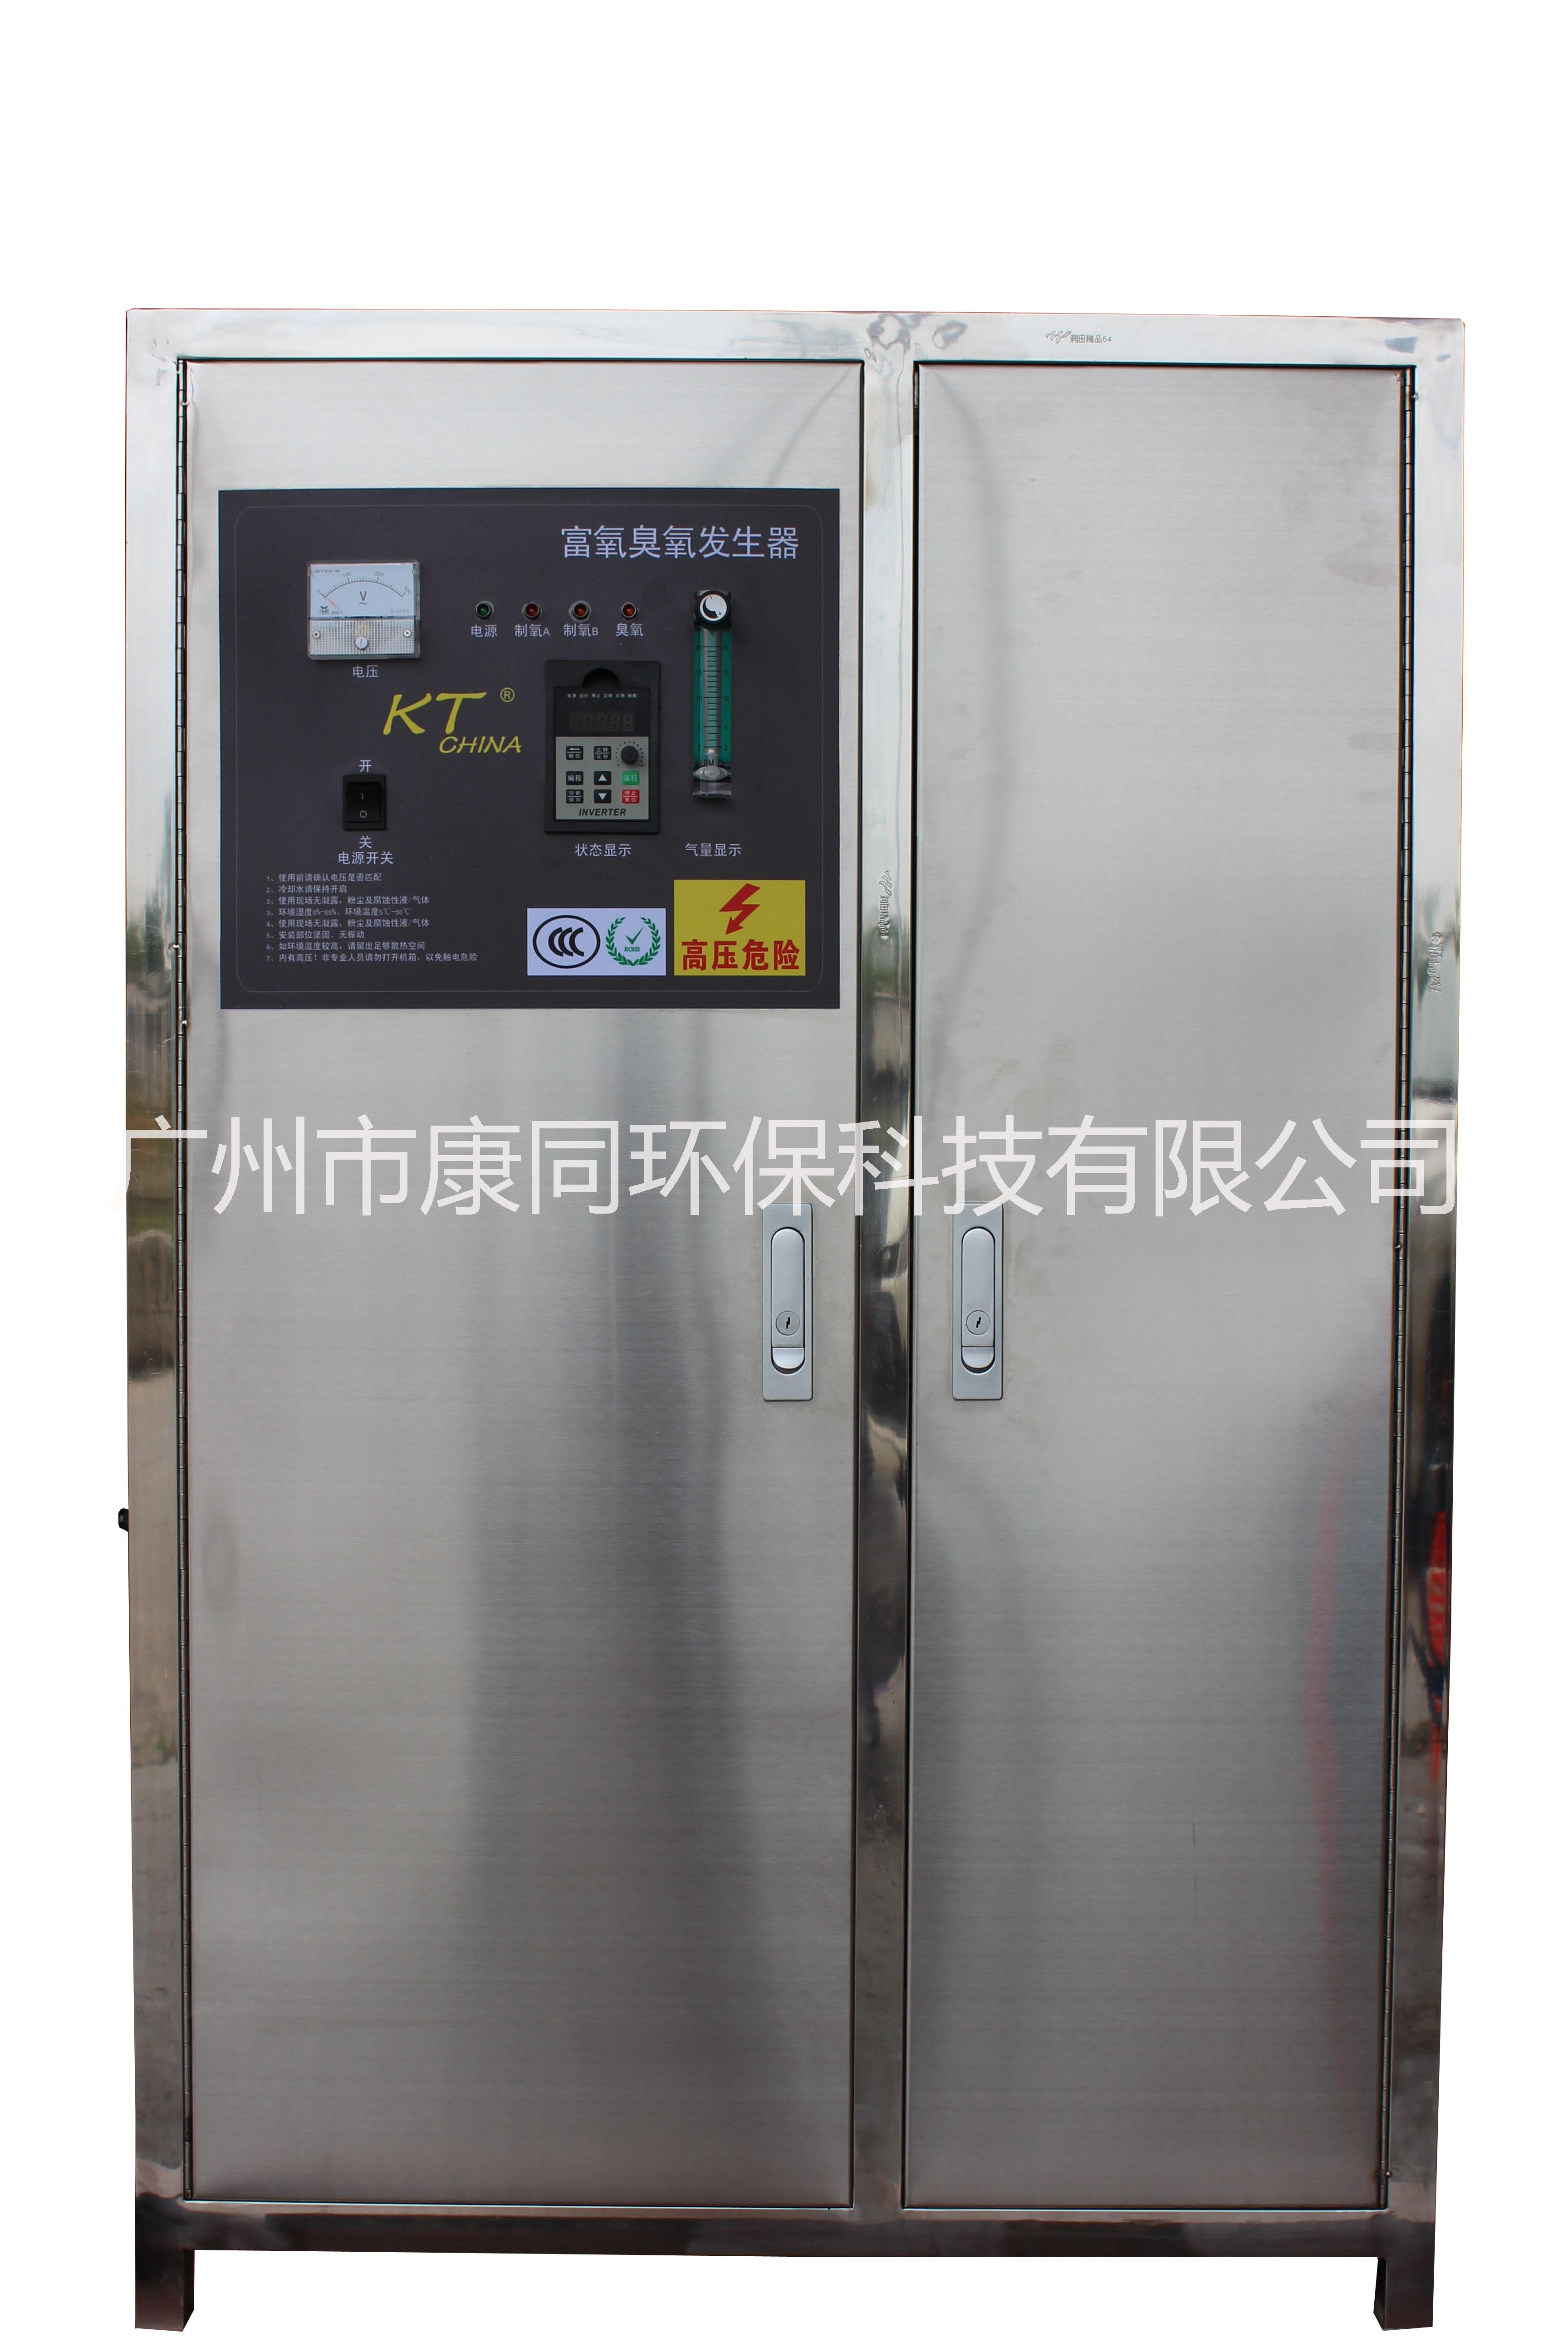 专业臭氧发生器厂家 臭氧发生器批发 广州臭氧发生器专家图片